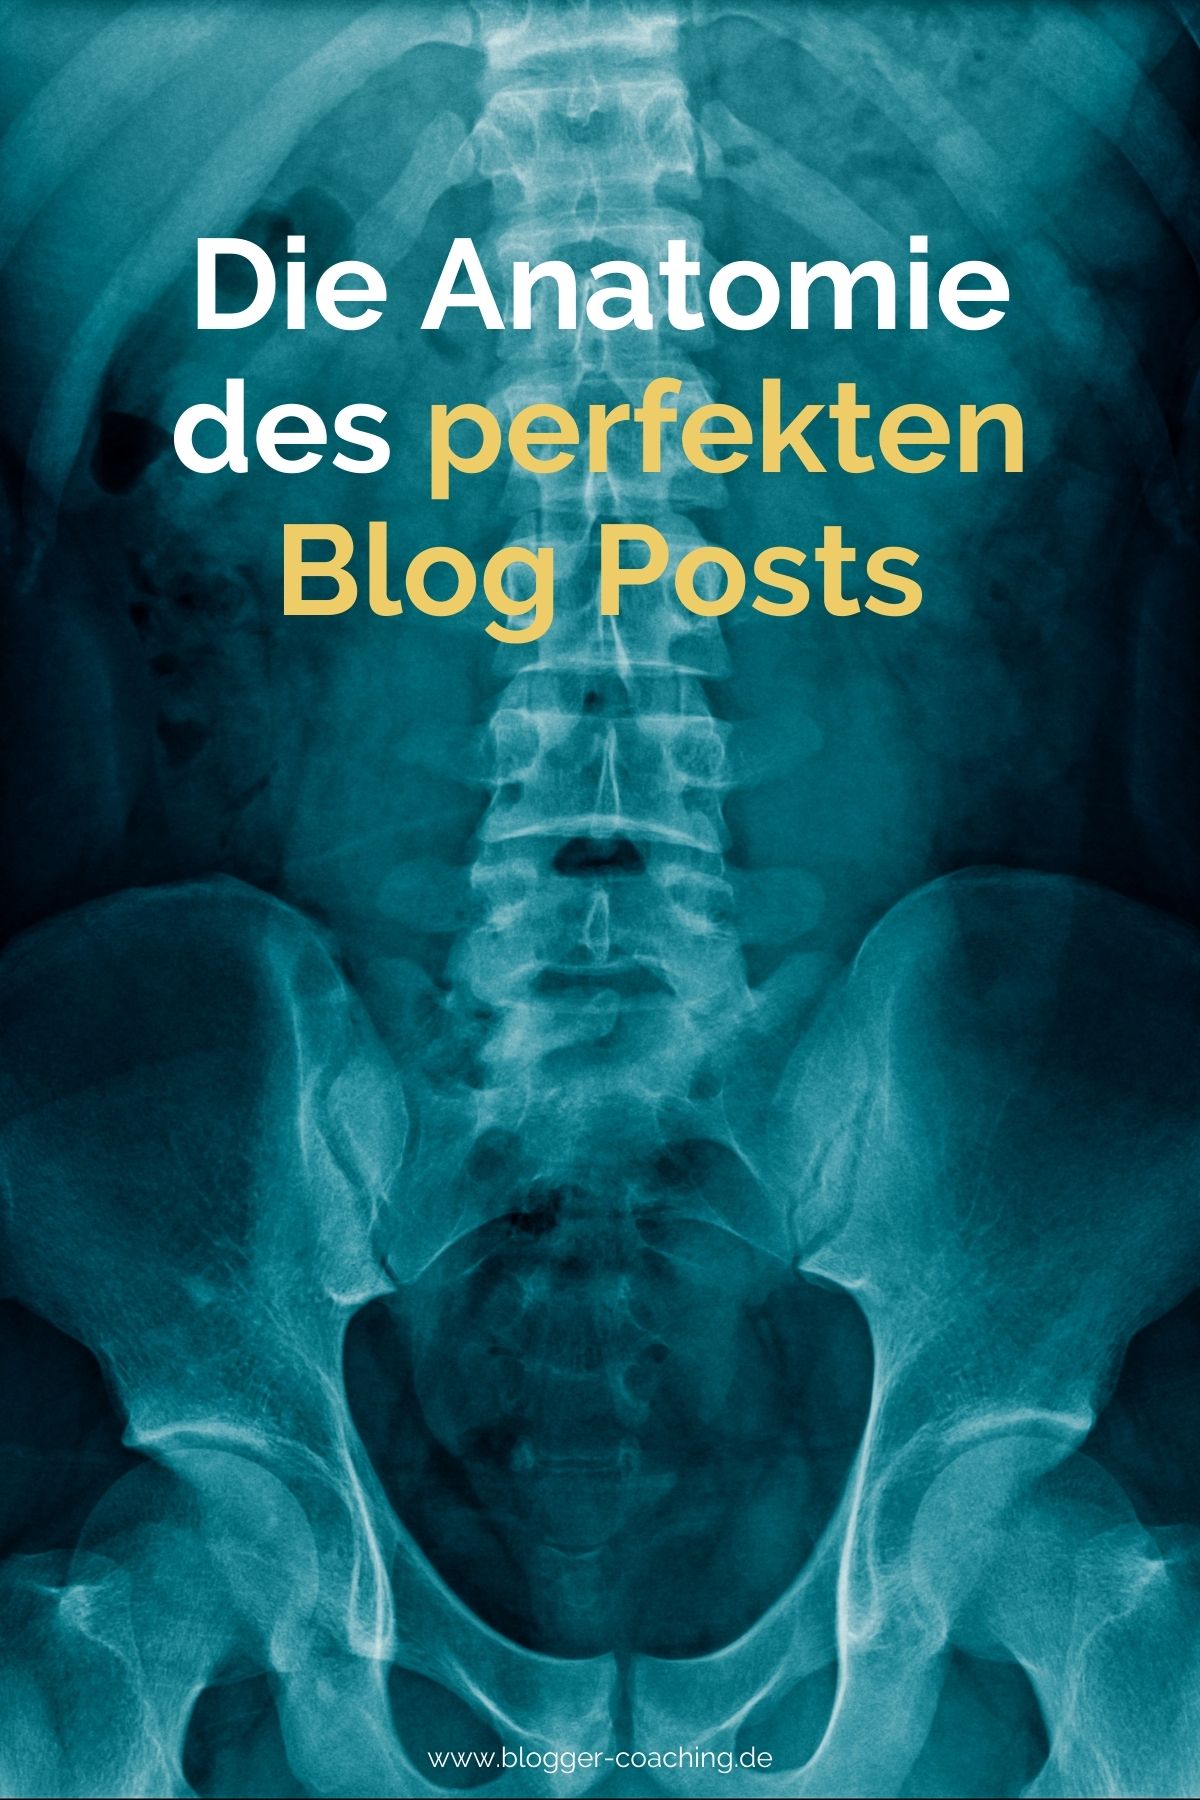 Die Anatomie des perfekten Blog Posts - Der ultimative Bauplan | Business Blogger Coaching Filiz Odenthal